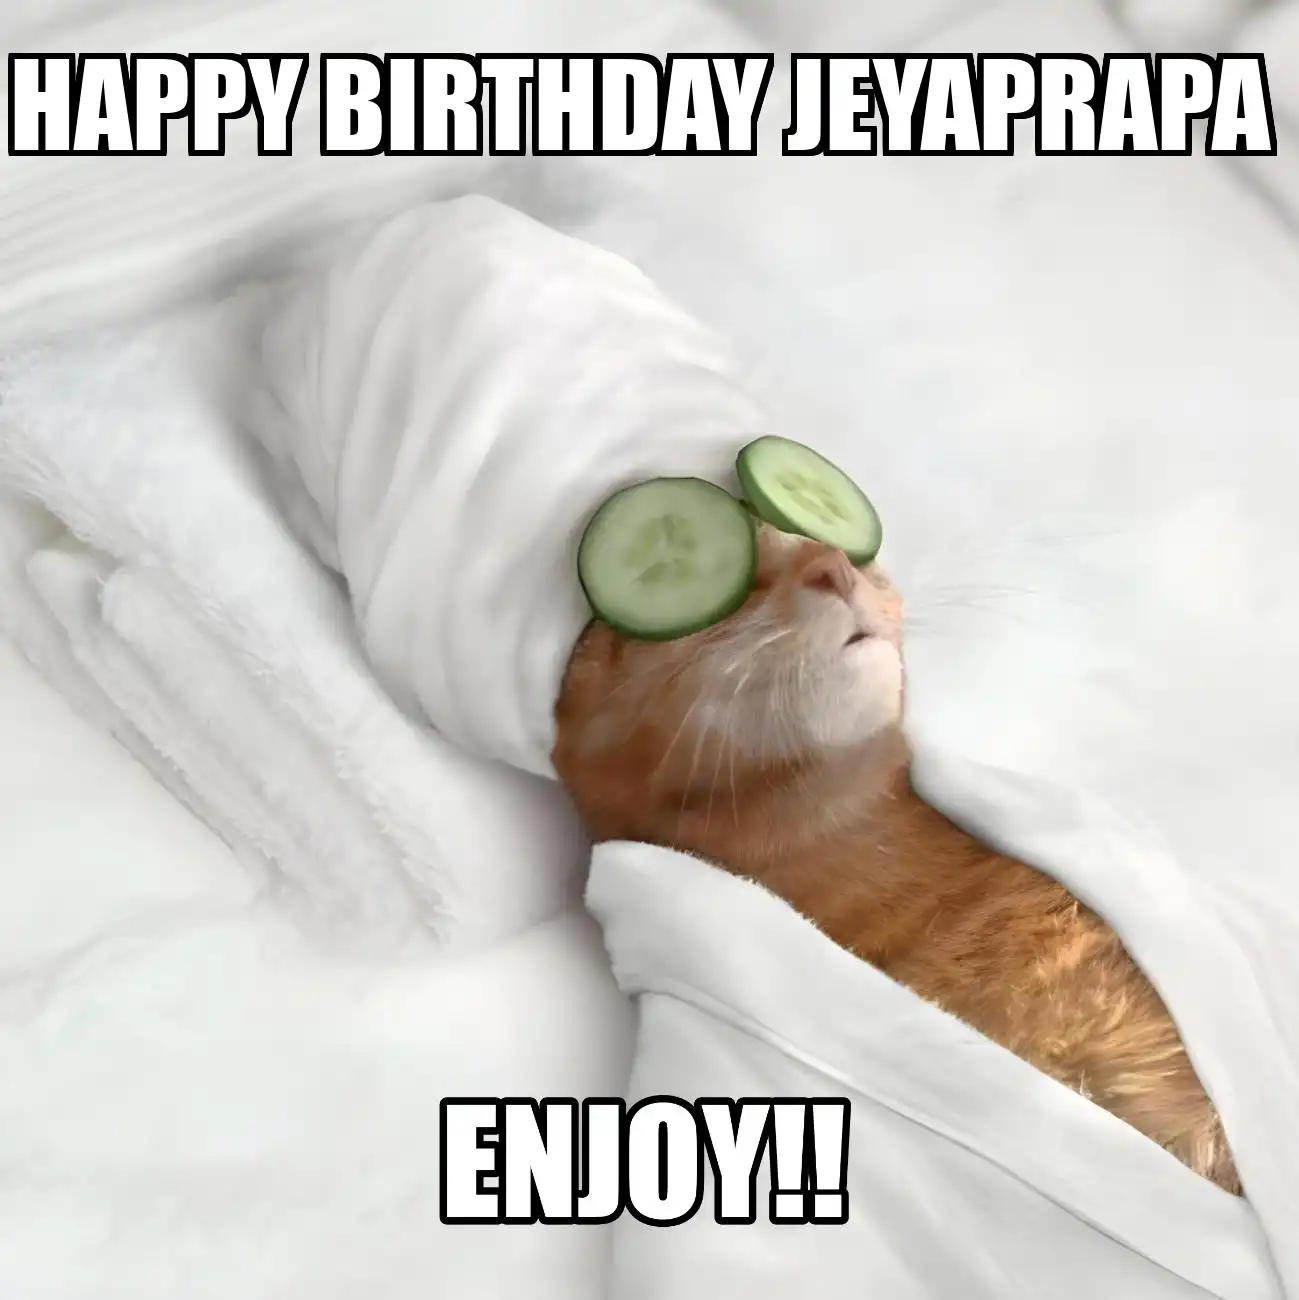 Happy Birthday Jeyaprapa Enjoy Cat Meme